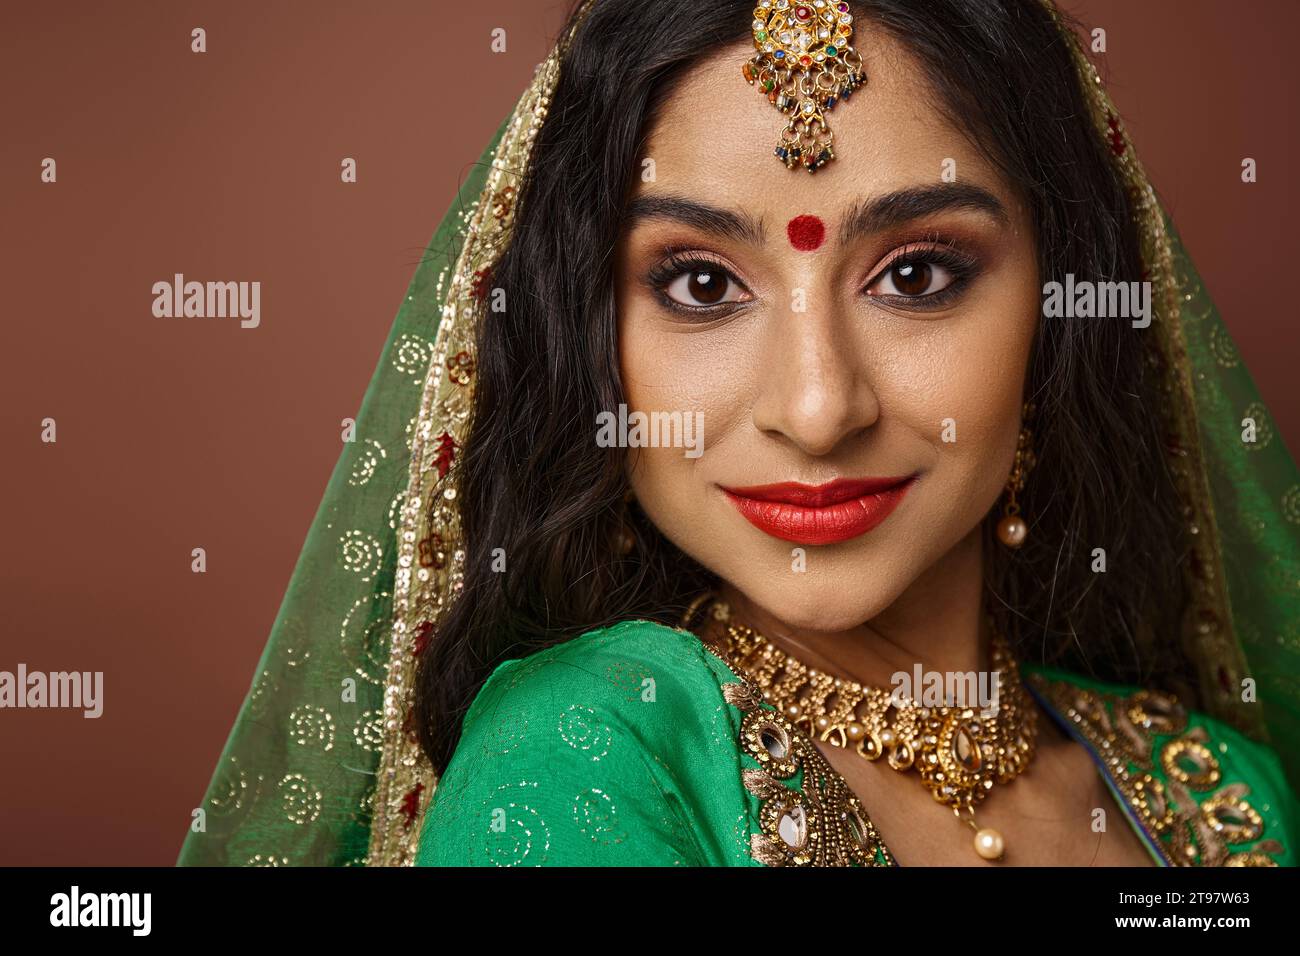 portrait de femme indienne attrayante avec des accessoires traditionnels et bindi point regardant la caméra Banque D'Images